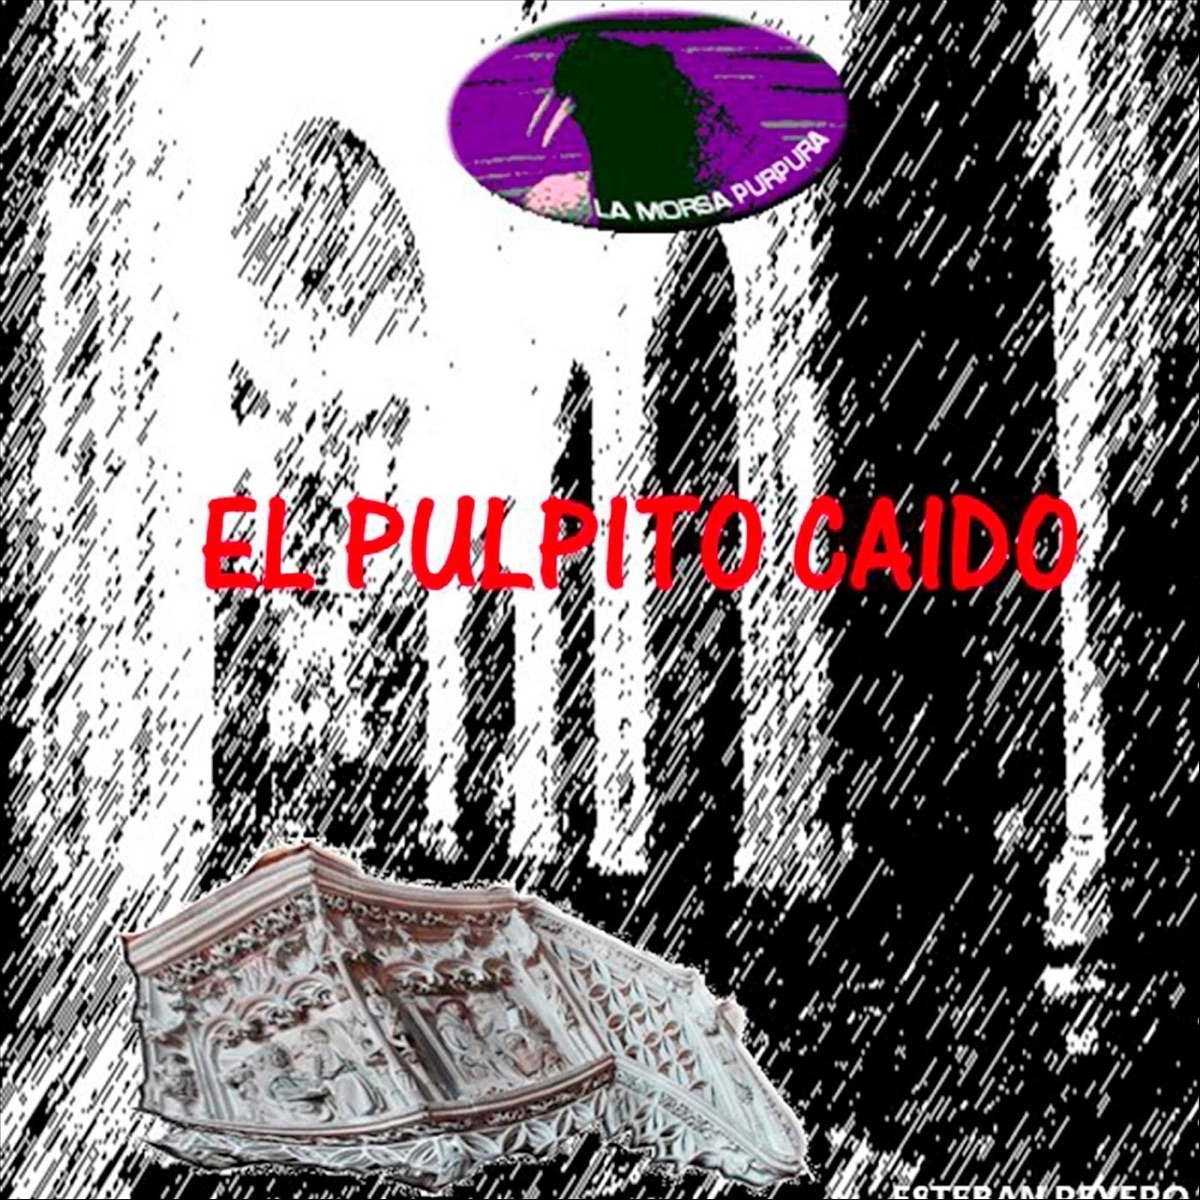 El Pulpito Caido - Single - Album by Esteban Reyero - Apple Music